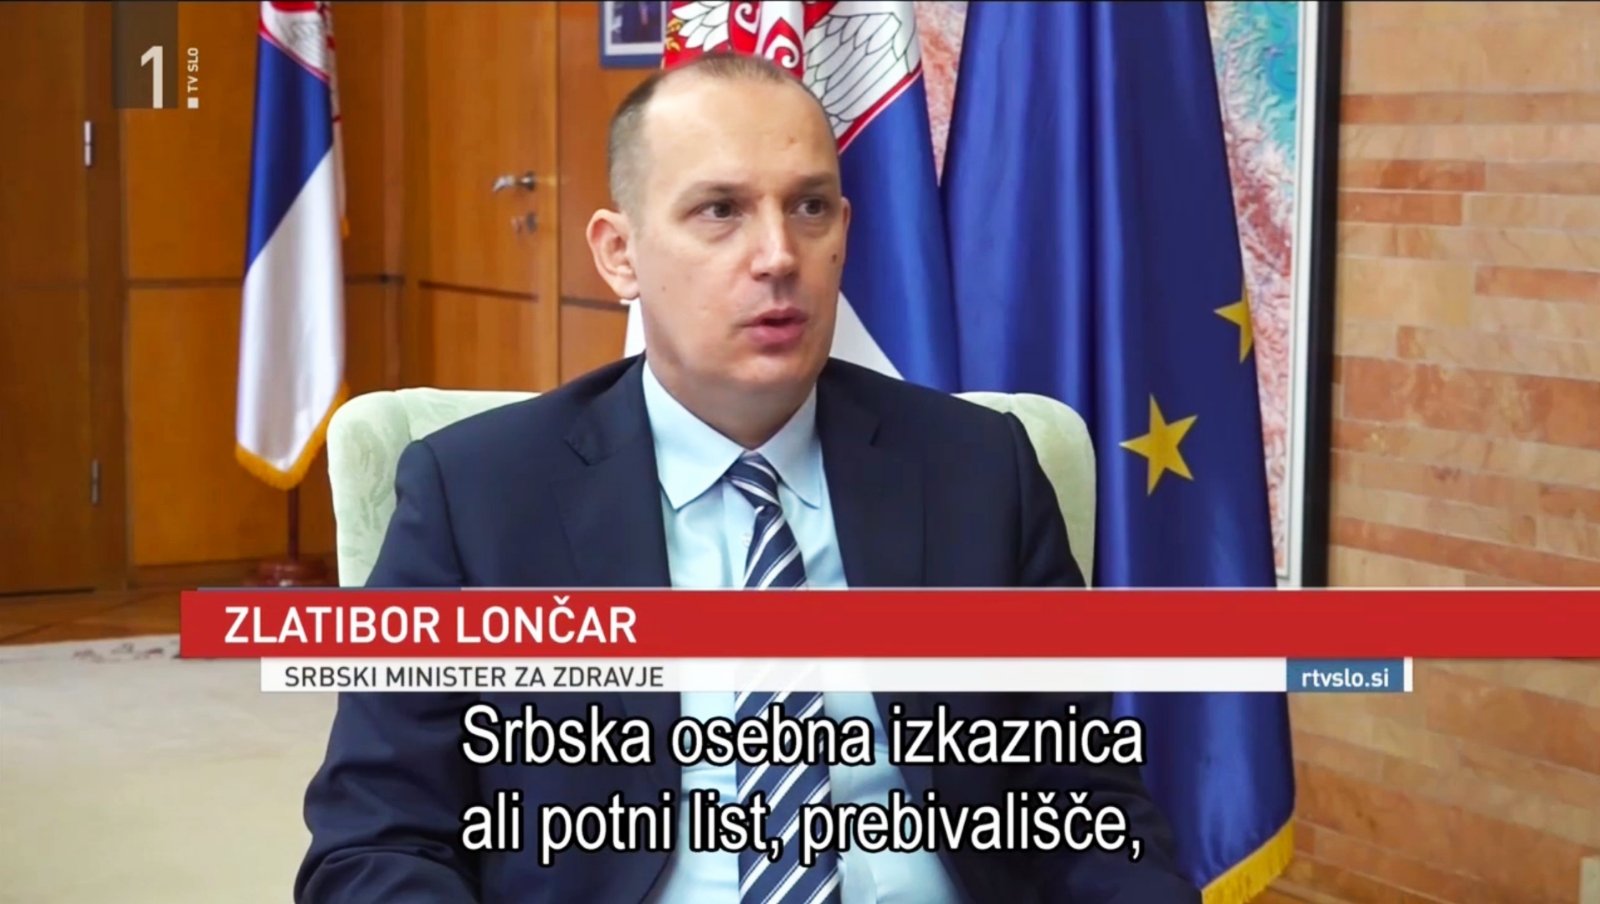 Министар Лончар за РТВ Словенија: “ Партнерство И заједничка борба свих држава Европе против корона вируса је најбоље решење”